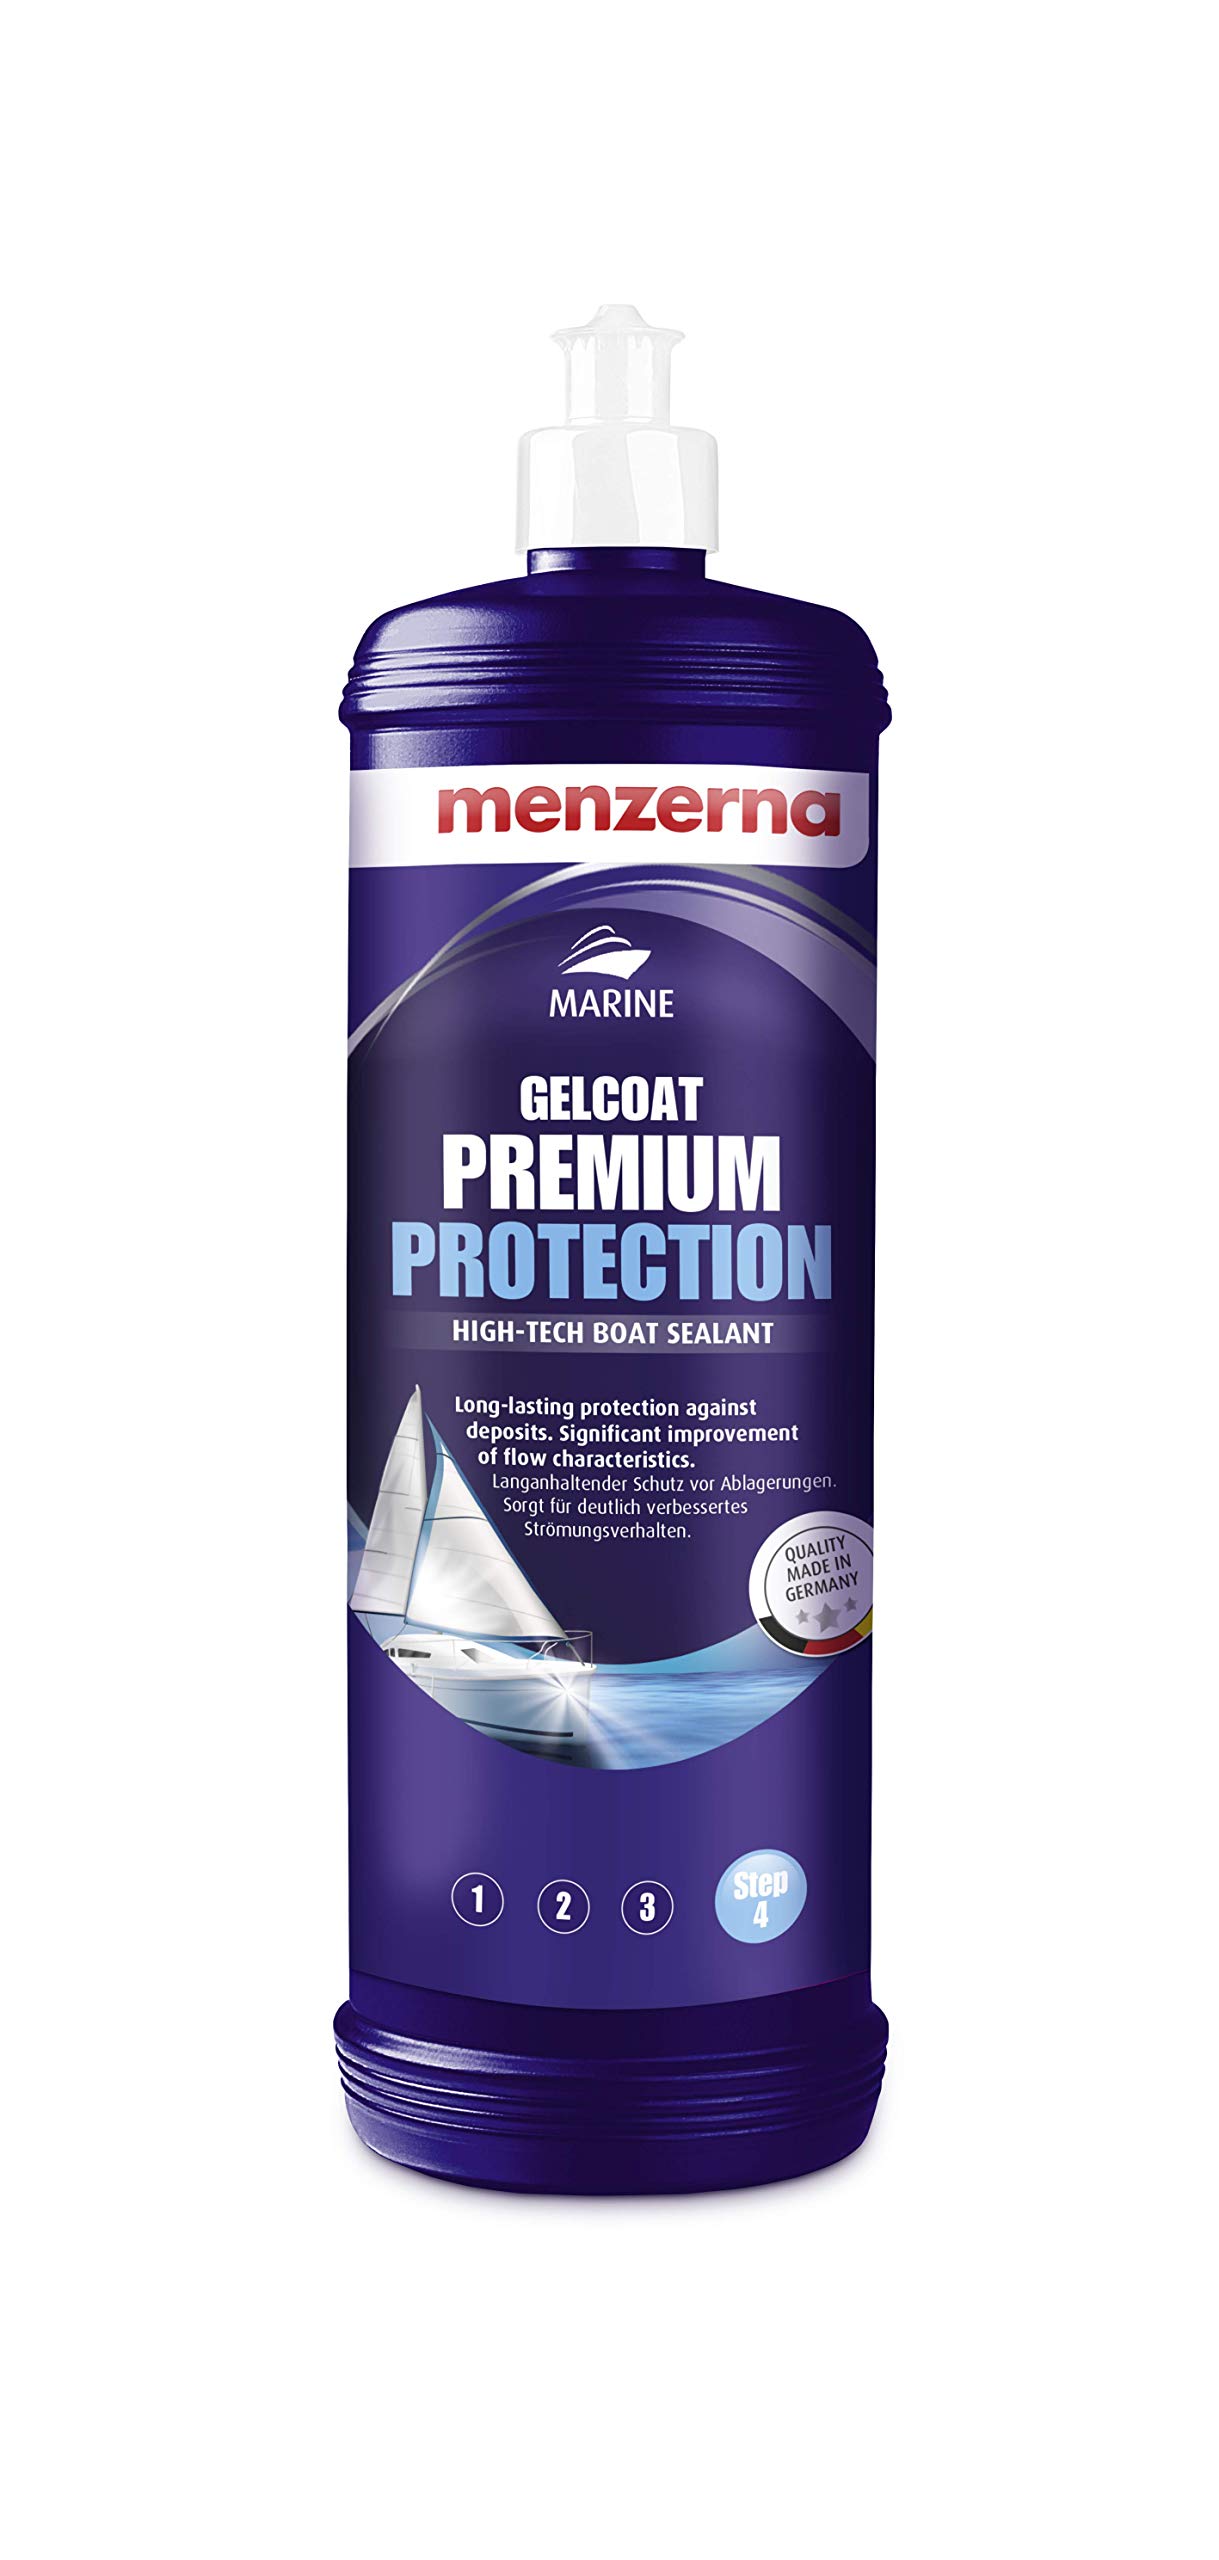 menzerna Marine GELCOAT Premium Protection Bootspflege 1 Liter